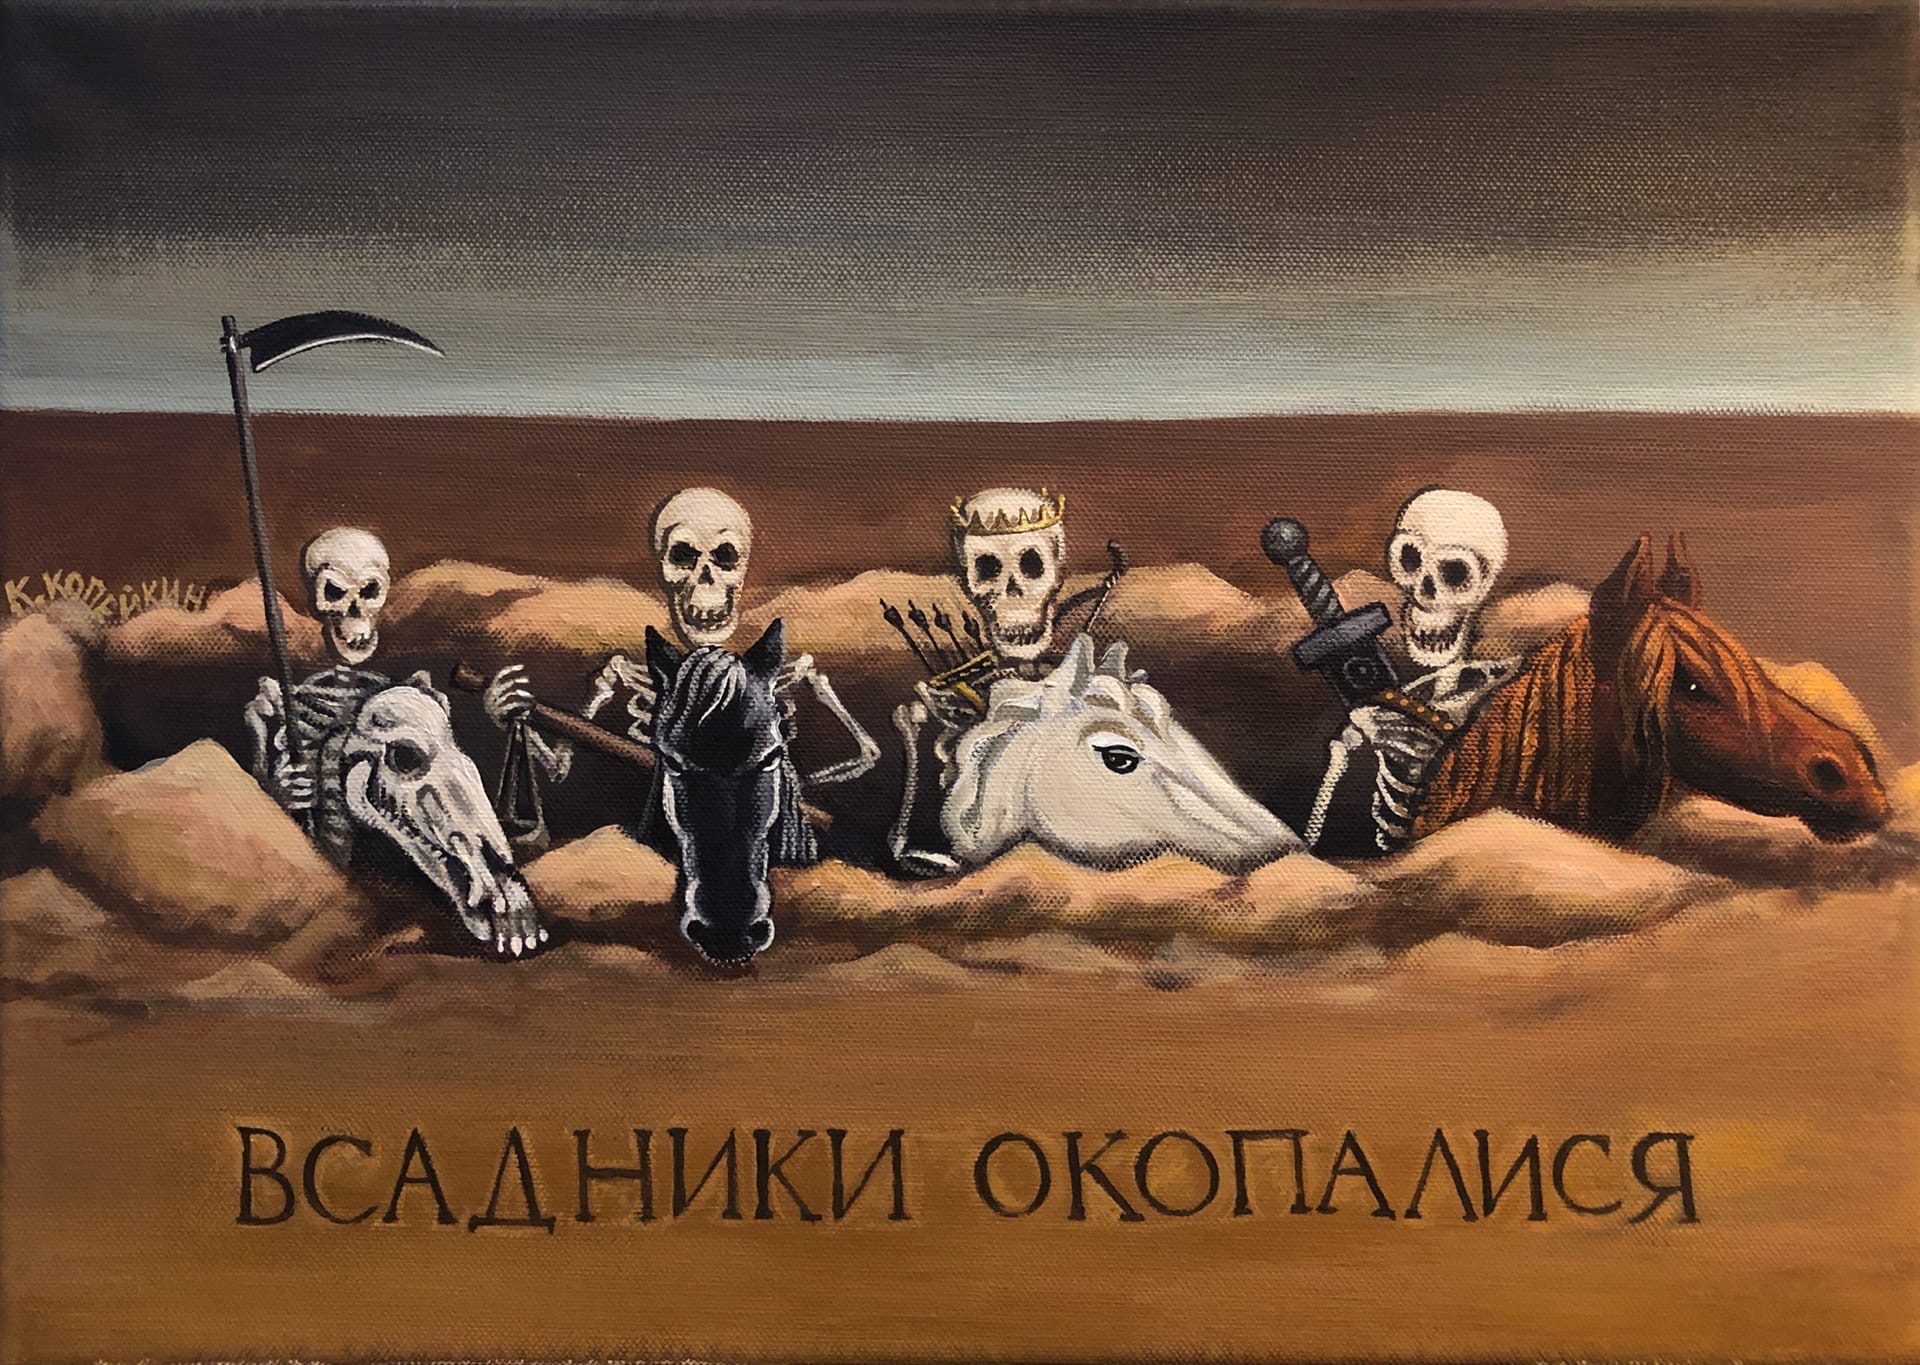 Русская хтонь: 5 художников, картины которых одновременно веселят и нагоняют панику жизнь,история,курьезы,факты